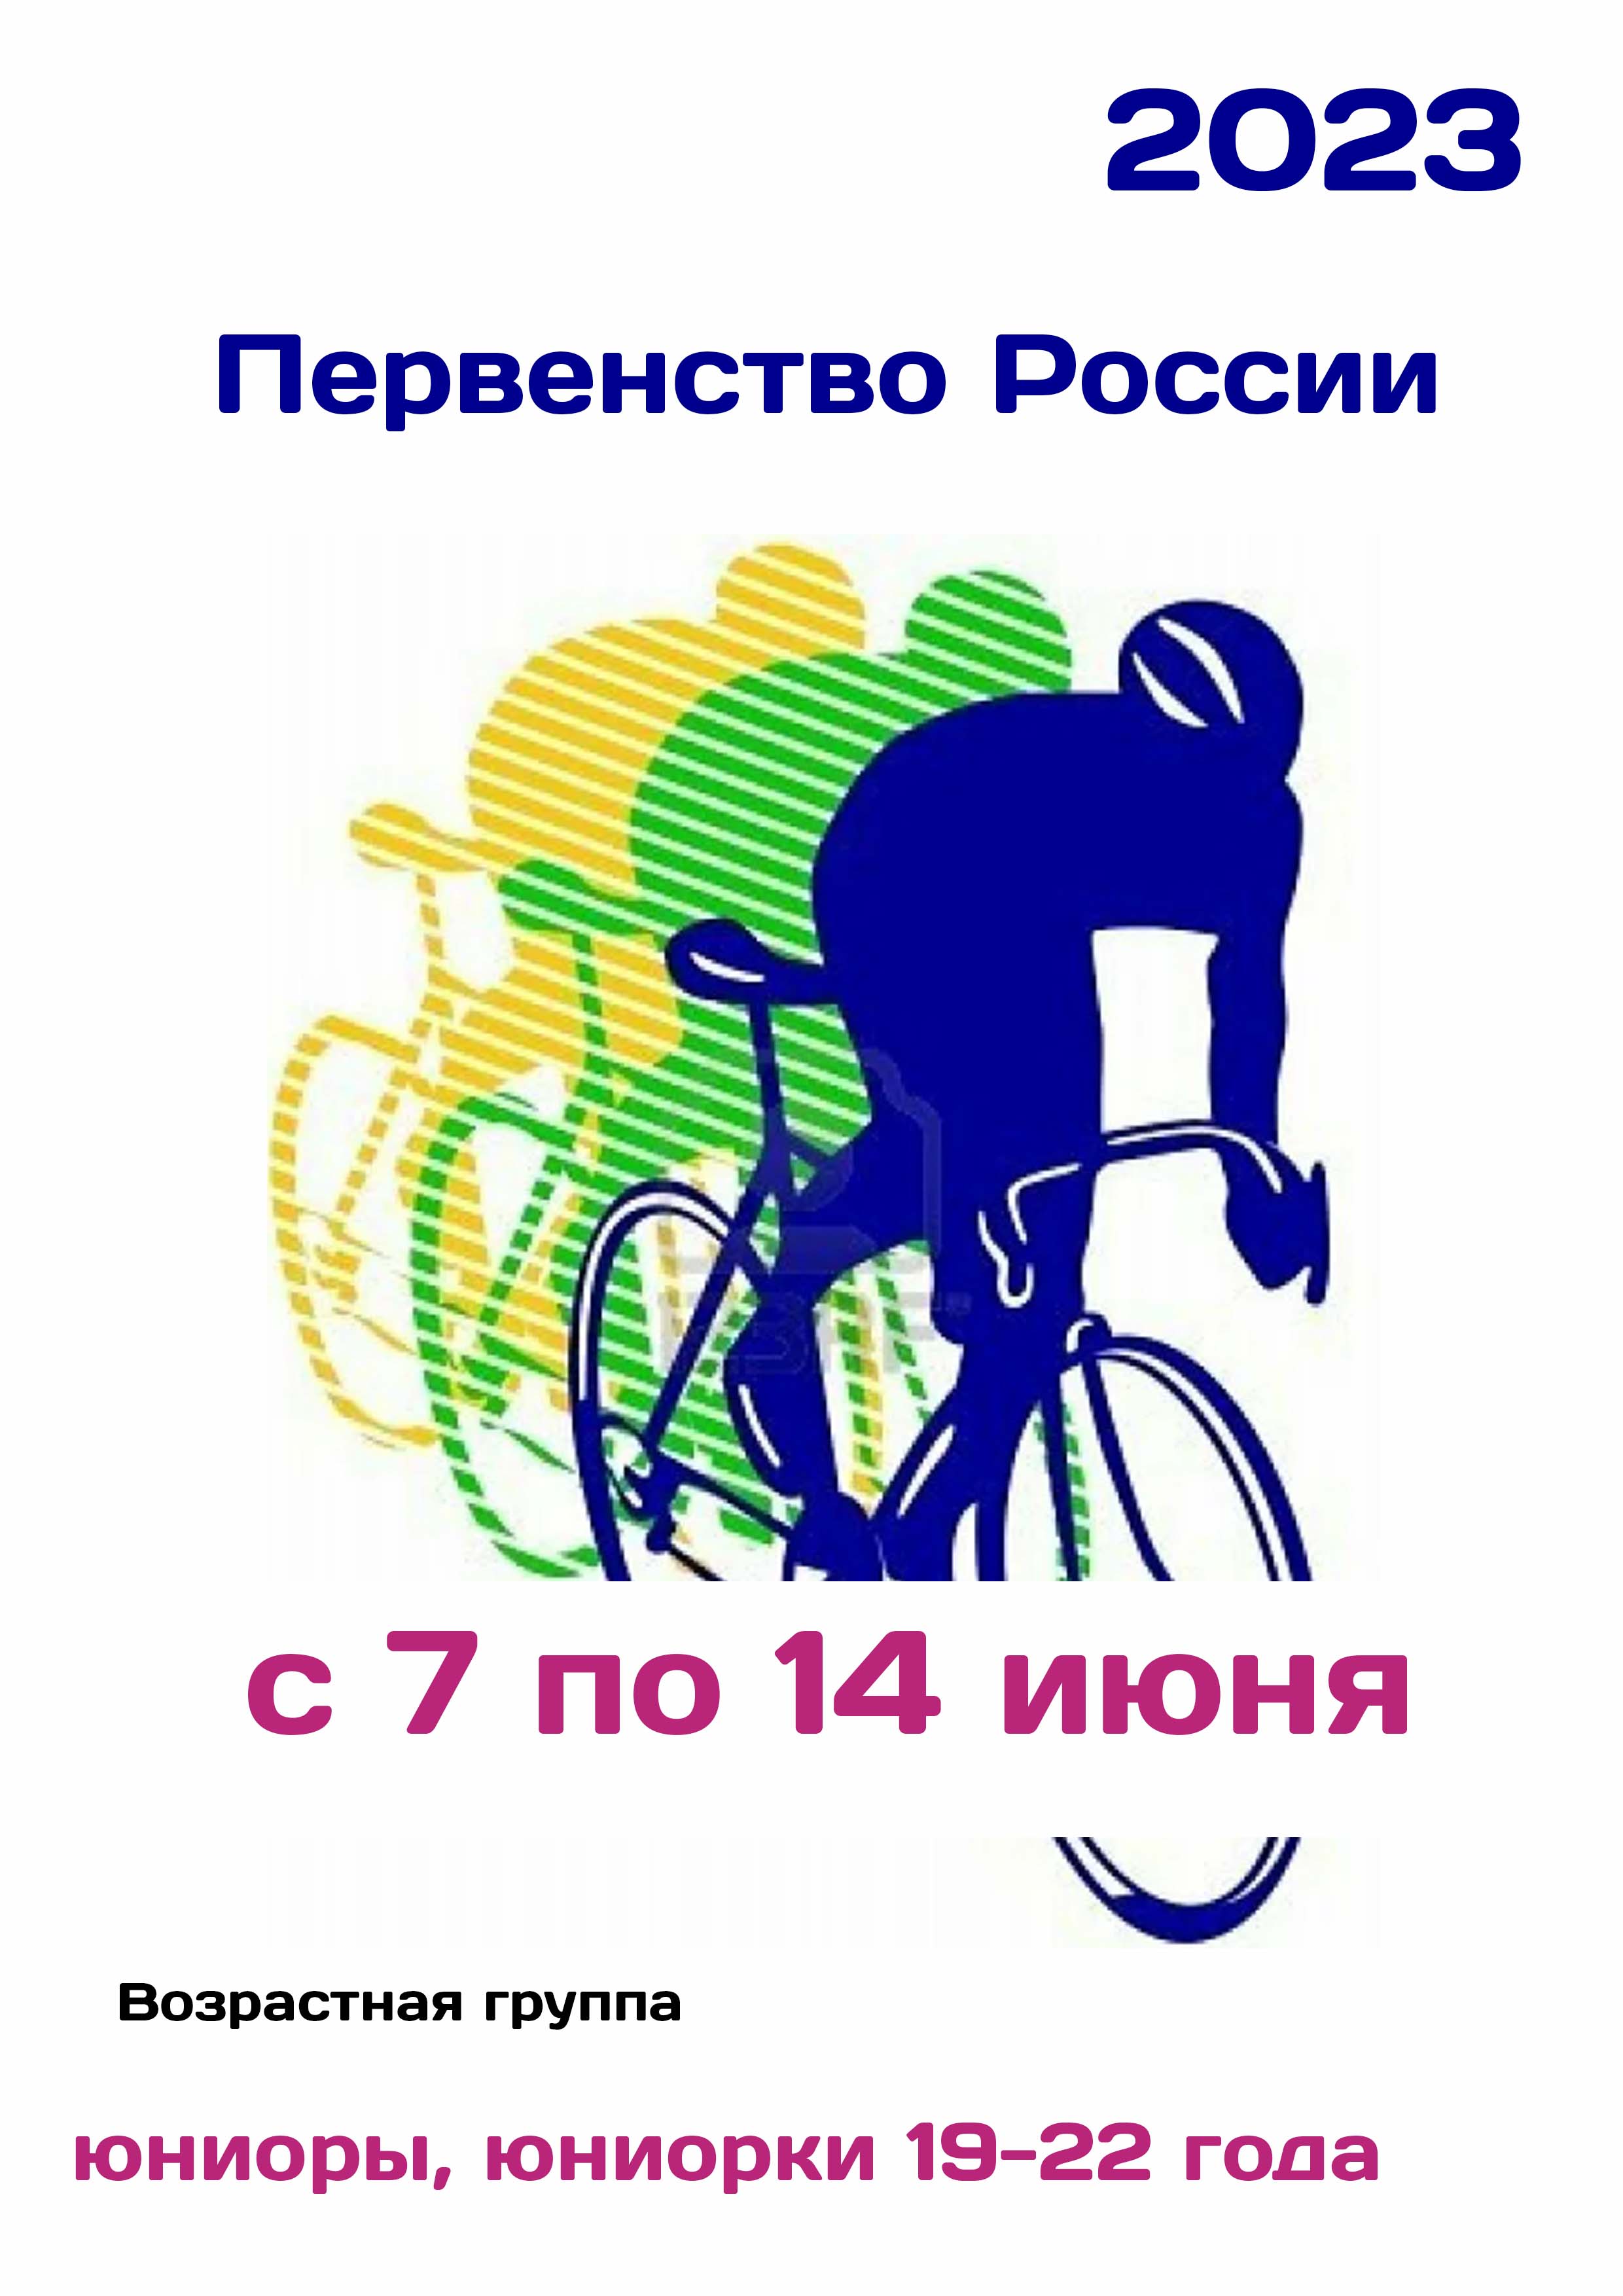 Первенство России по велоспорту 7  юни
 2023  година
 